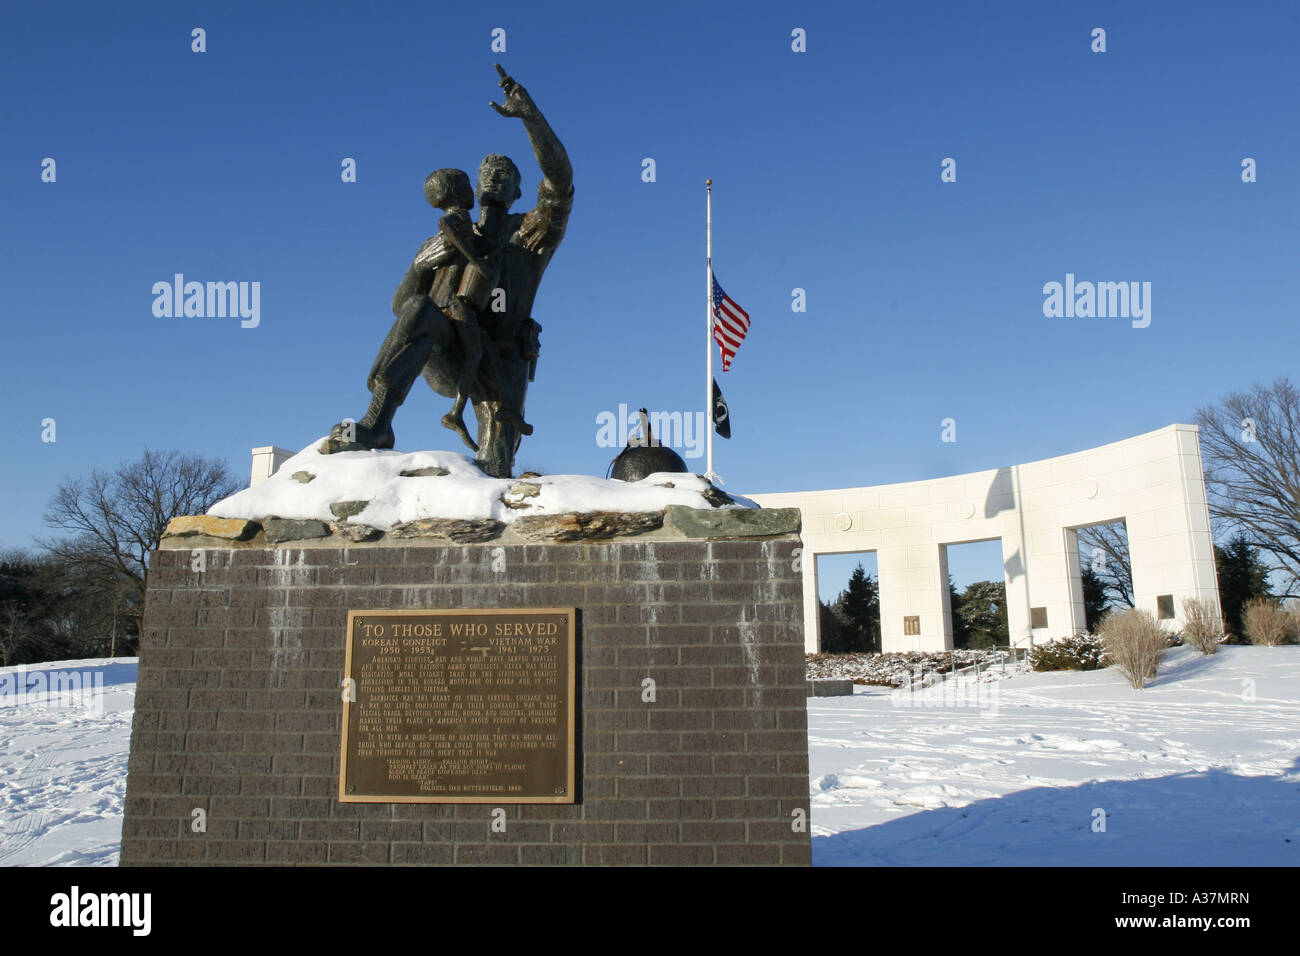 Das Vietnam Memorial Memorial Park in Omaha, Nebraska. Das Denkmal ist Public Domain, so dass keine Property-Release erforderlich war. Stockfoto